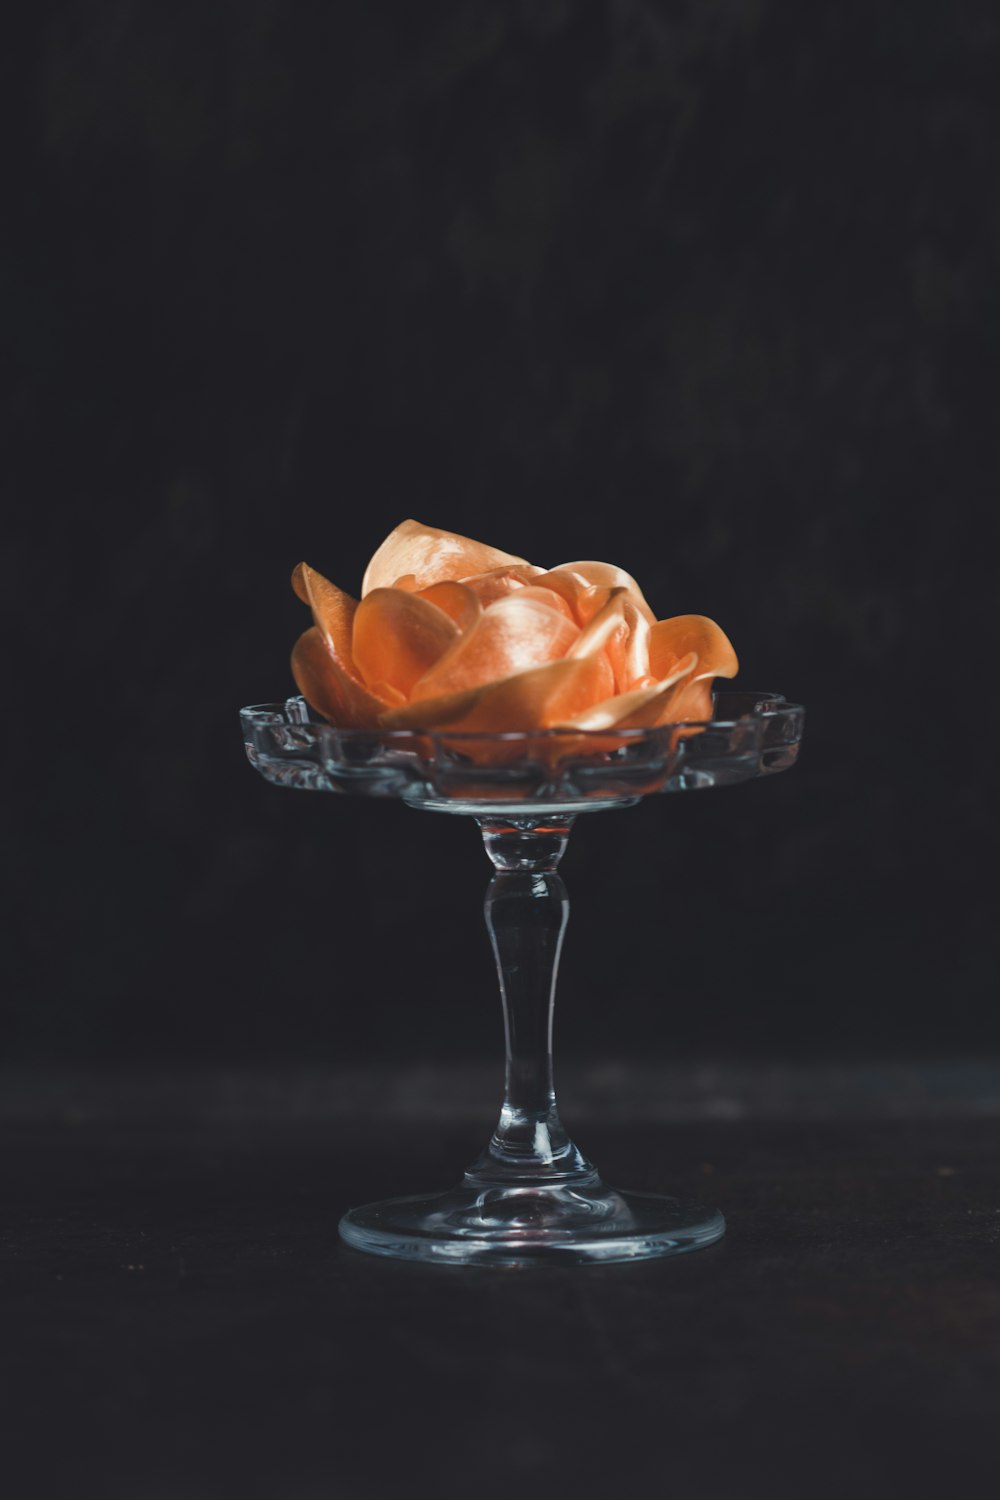 orange flower on glass footed vase against black background